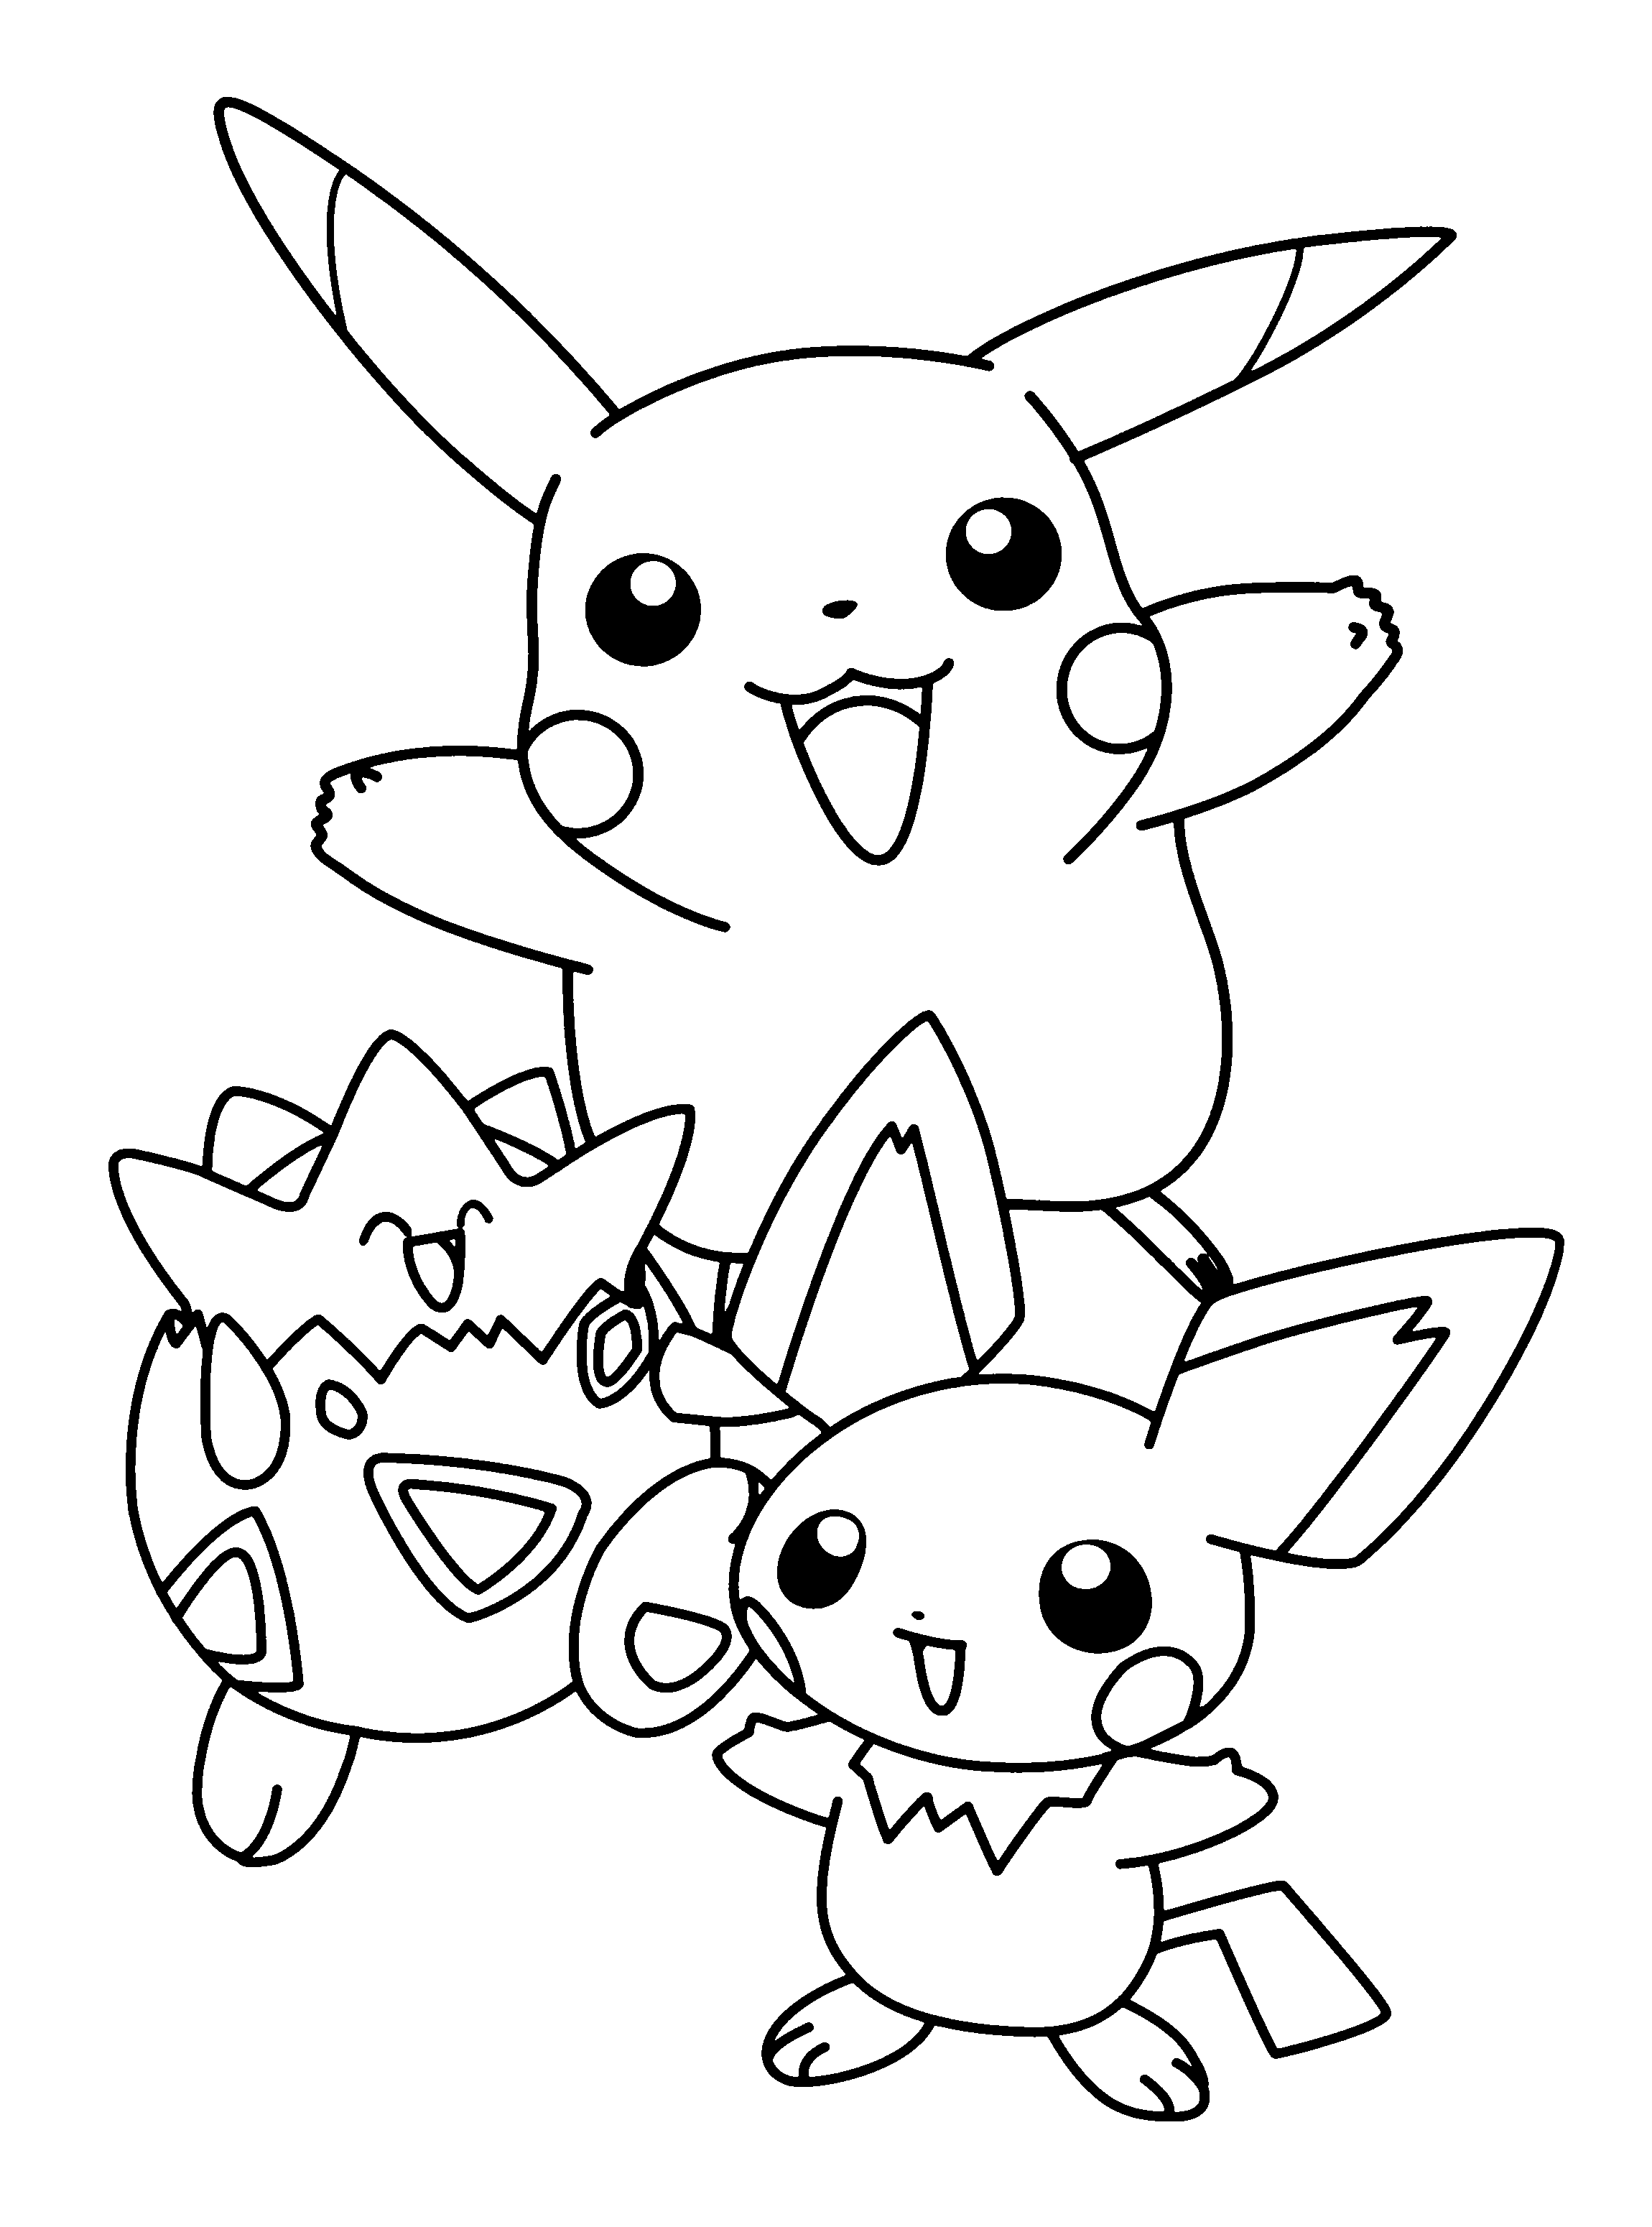 Desenhos Para Colorir Pokémon. Imprima ou Faça o download gratuitamente.